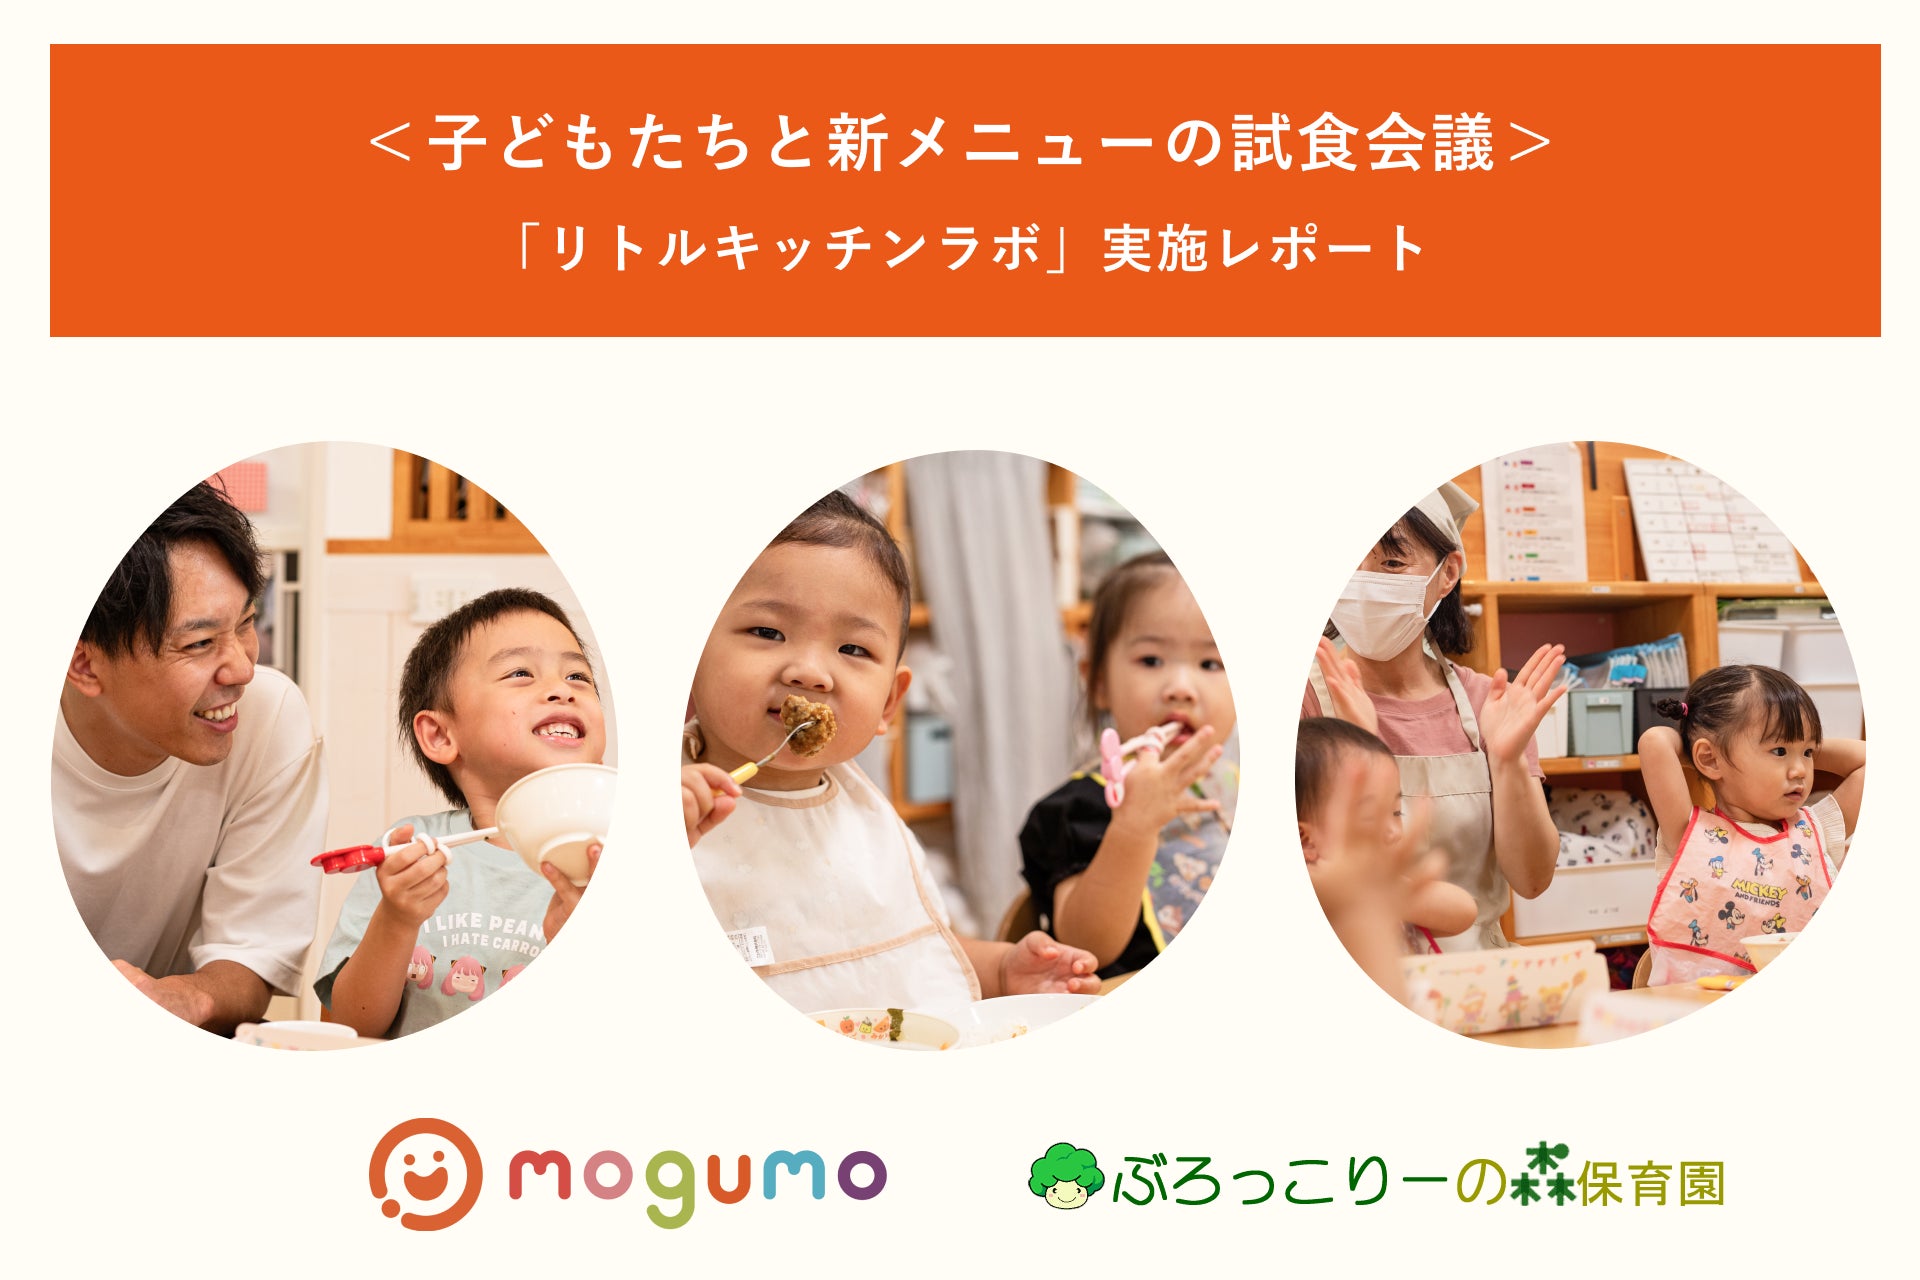 ＜夏休みイベントレポート＞ 子どもお墨付きの冷凍幼児食「mogumo」が少子化対策にも貢献！子どもたちと新メニューの試食会議を実施